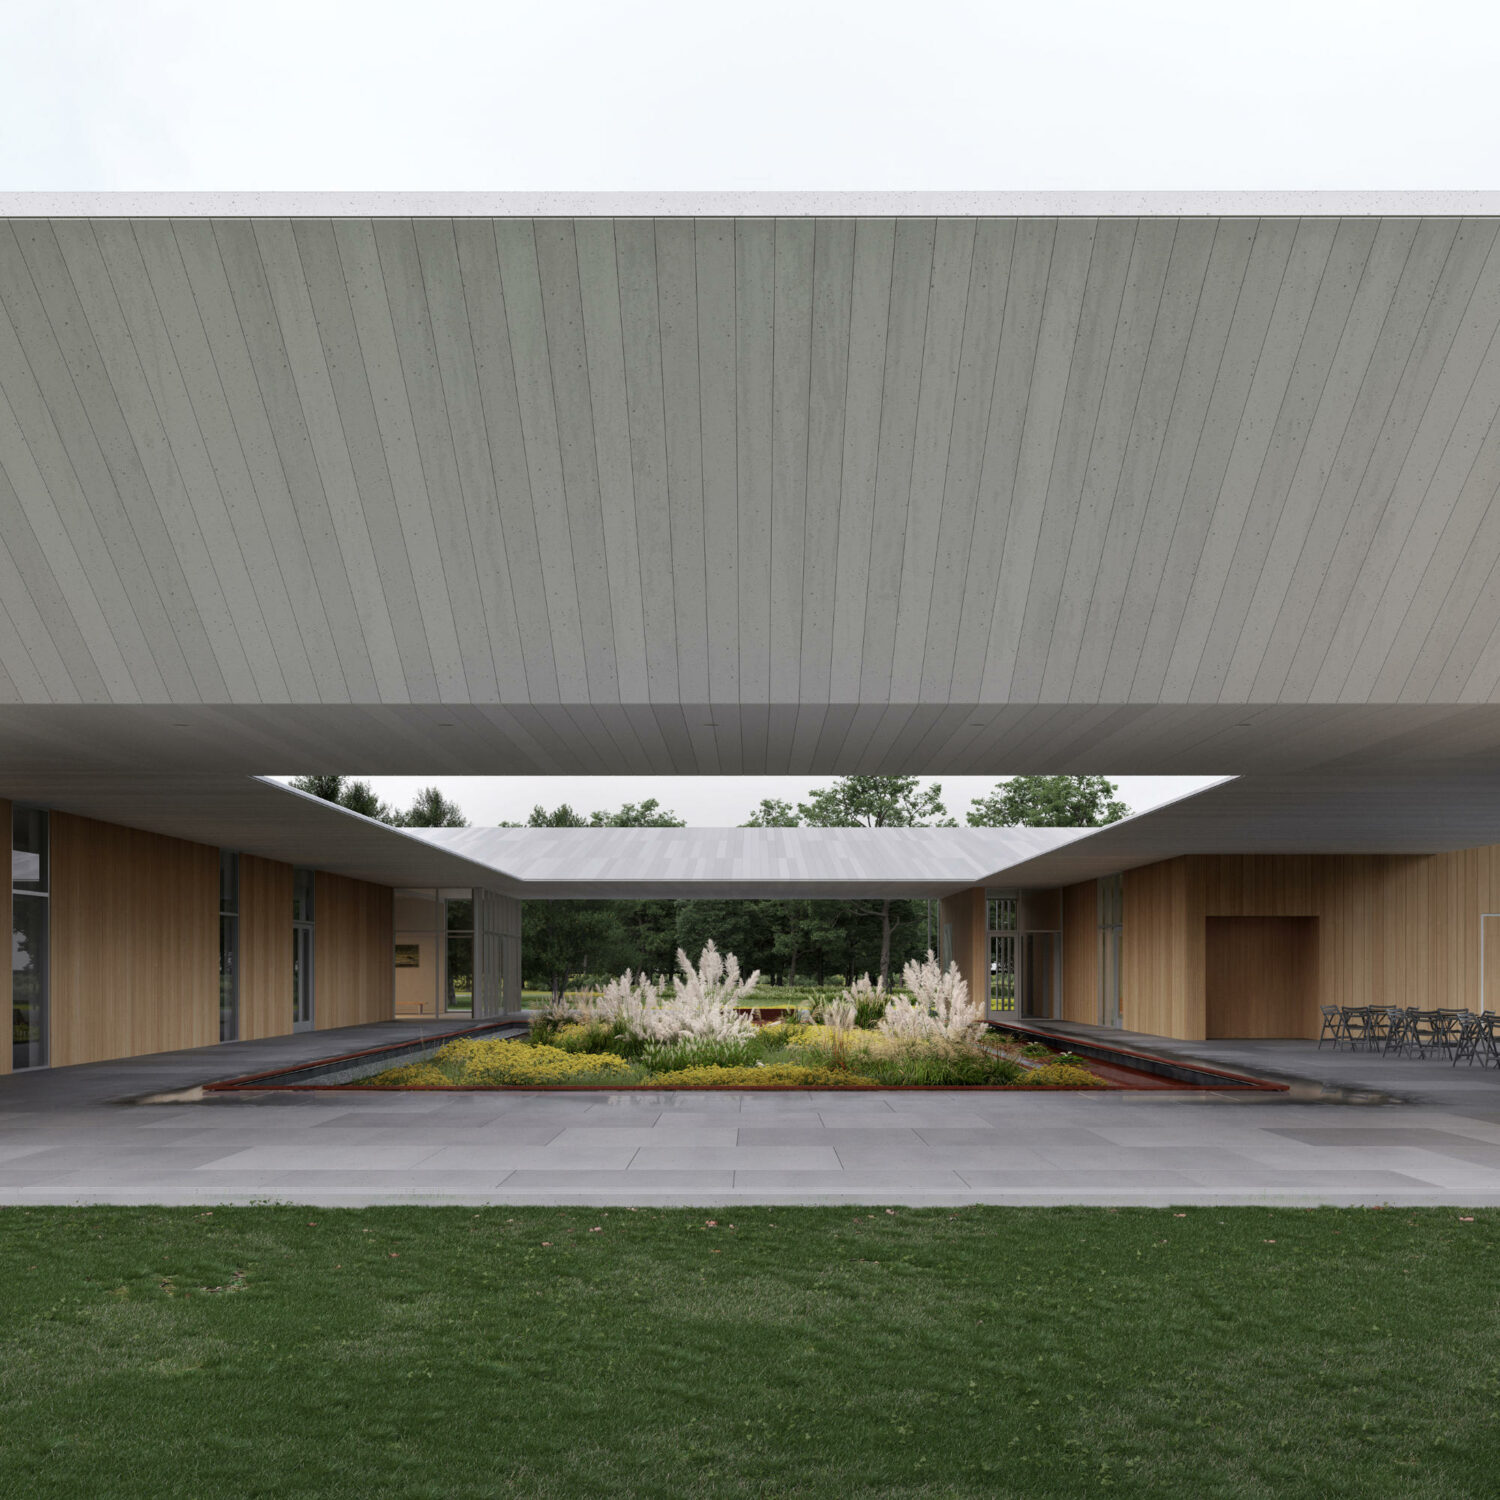 EskewDumezRipple reveals design for the Burden Welcome Center in Baton Rouge, Louisiana